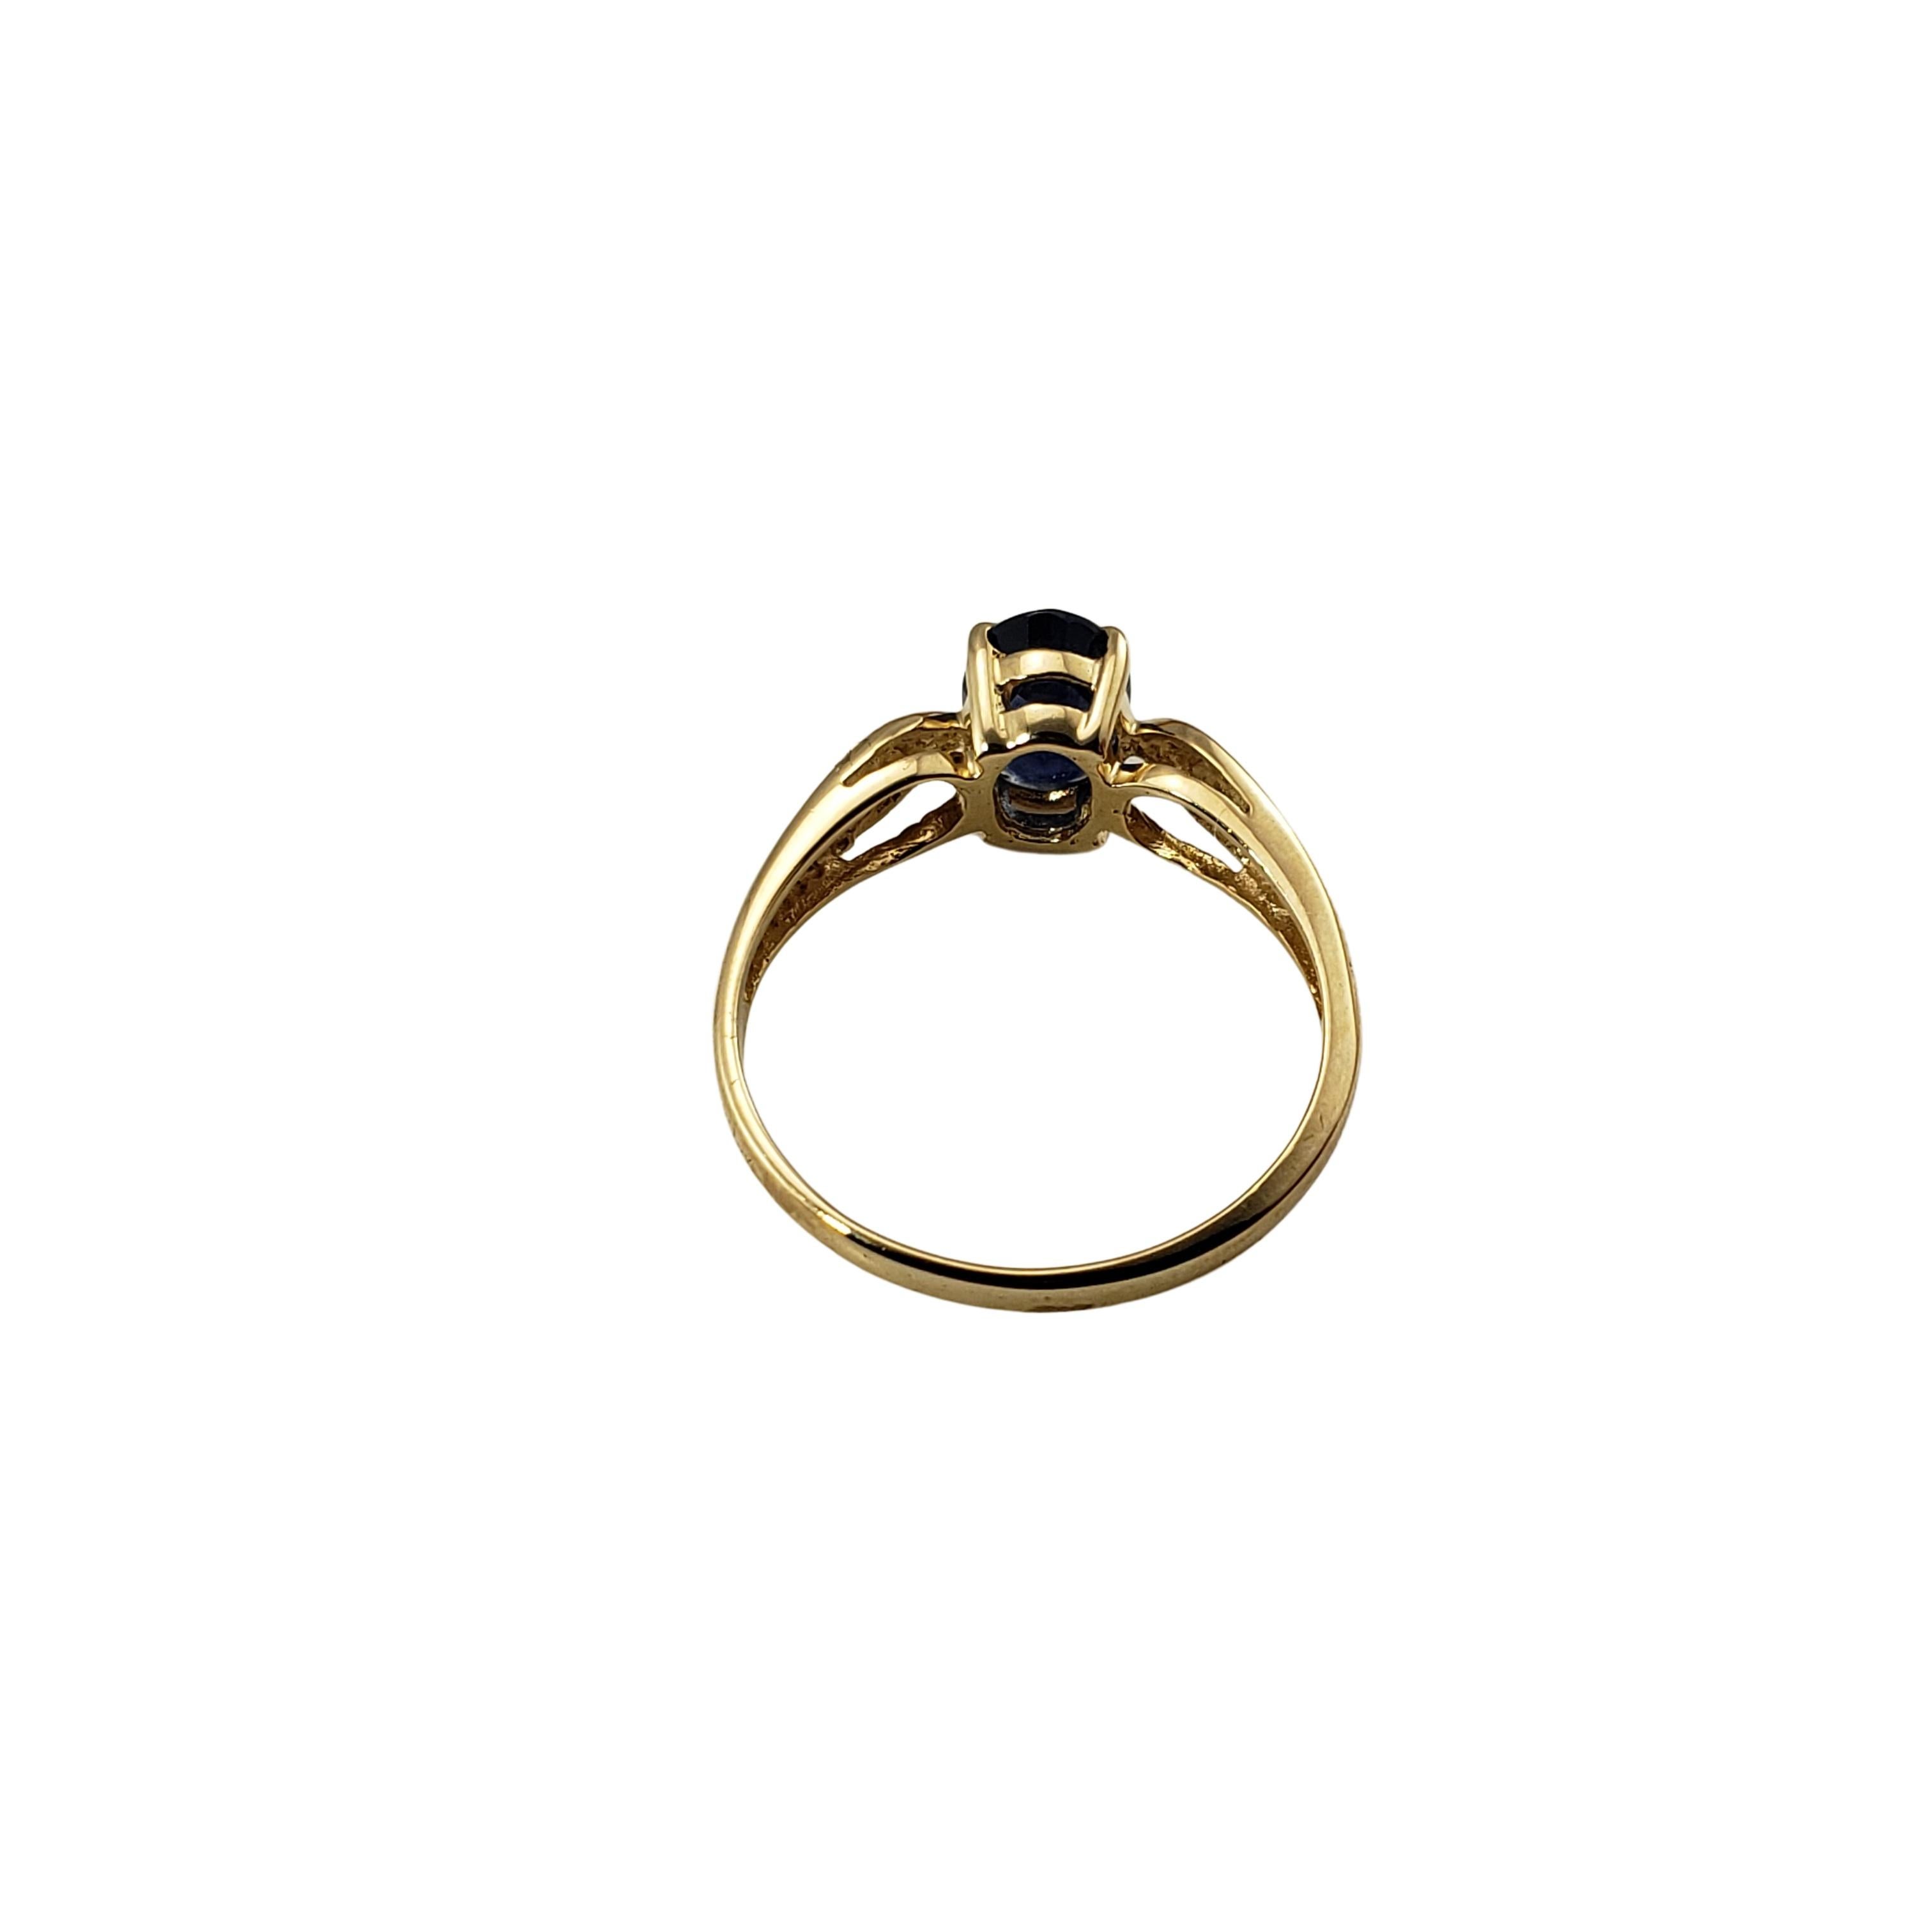 Women's 14 Karat Yellow Gold and Sapphire Ring